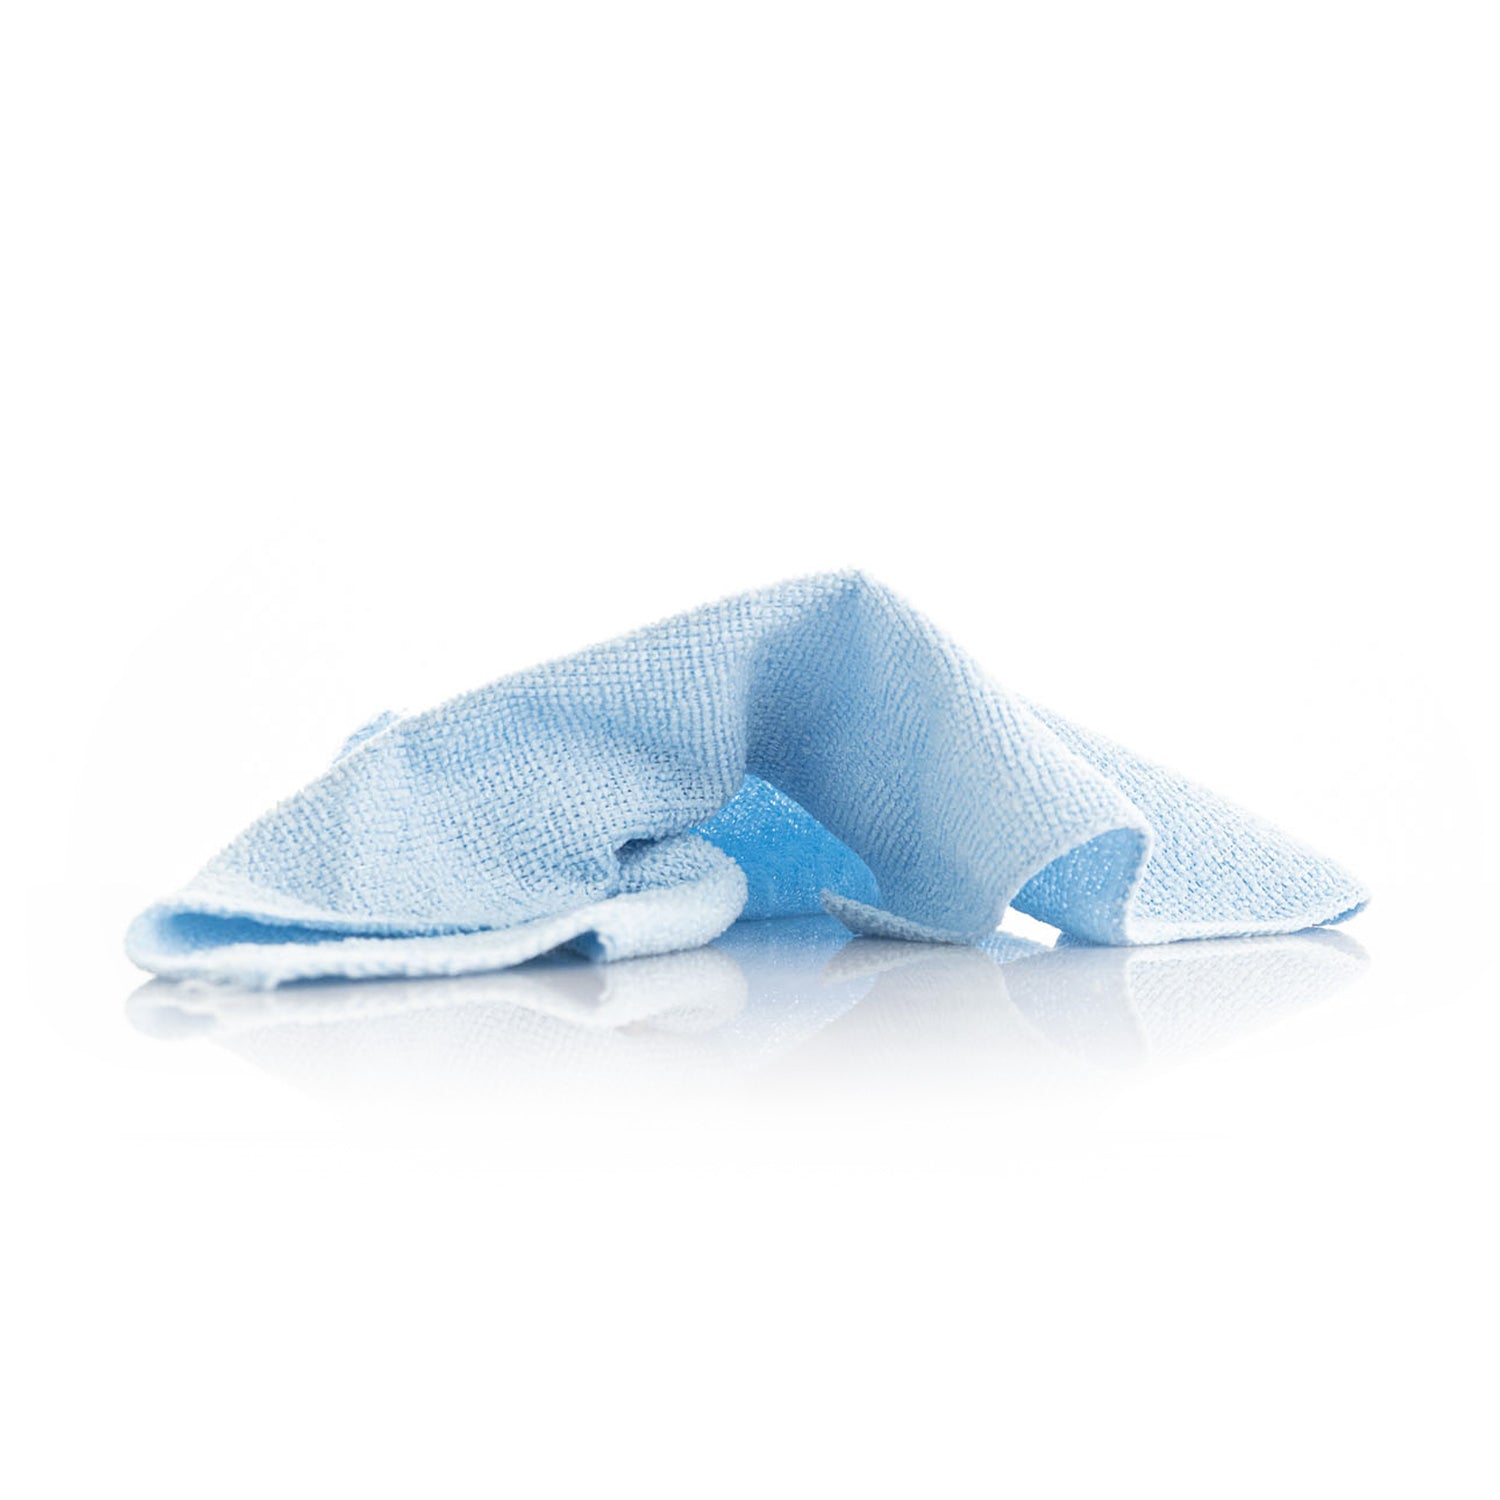 tear-n-clean-towel